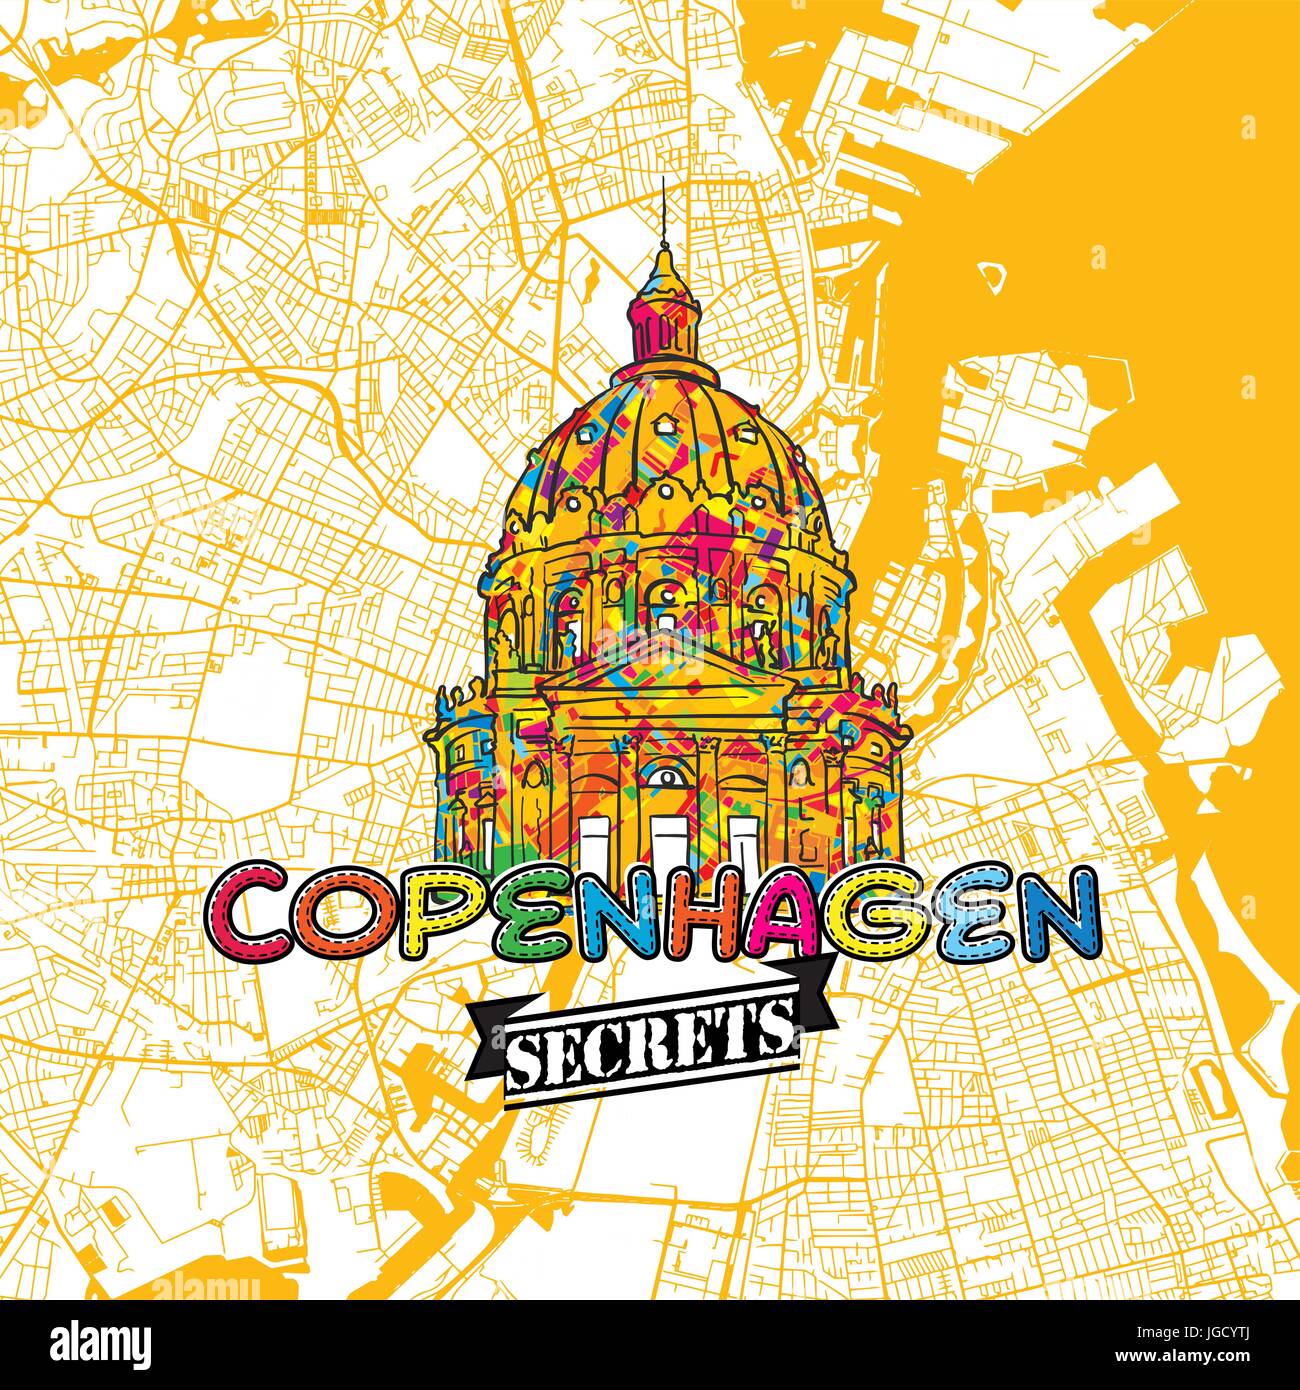 Voyage Copenhague Carte Art Secrets pour la cartographie des experts et des guides de voyage. Le logo de la ville à la main, typo de badge et dessinés à la main sur le dessus de l'image vectorielle sont regroupés Illustration de Vecteur